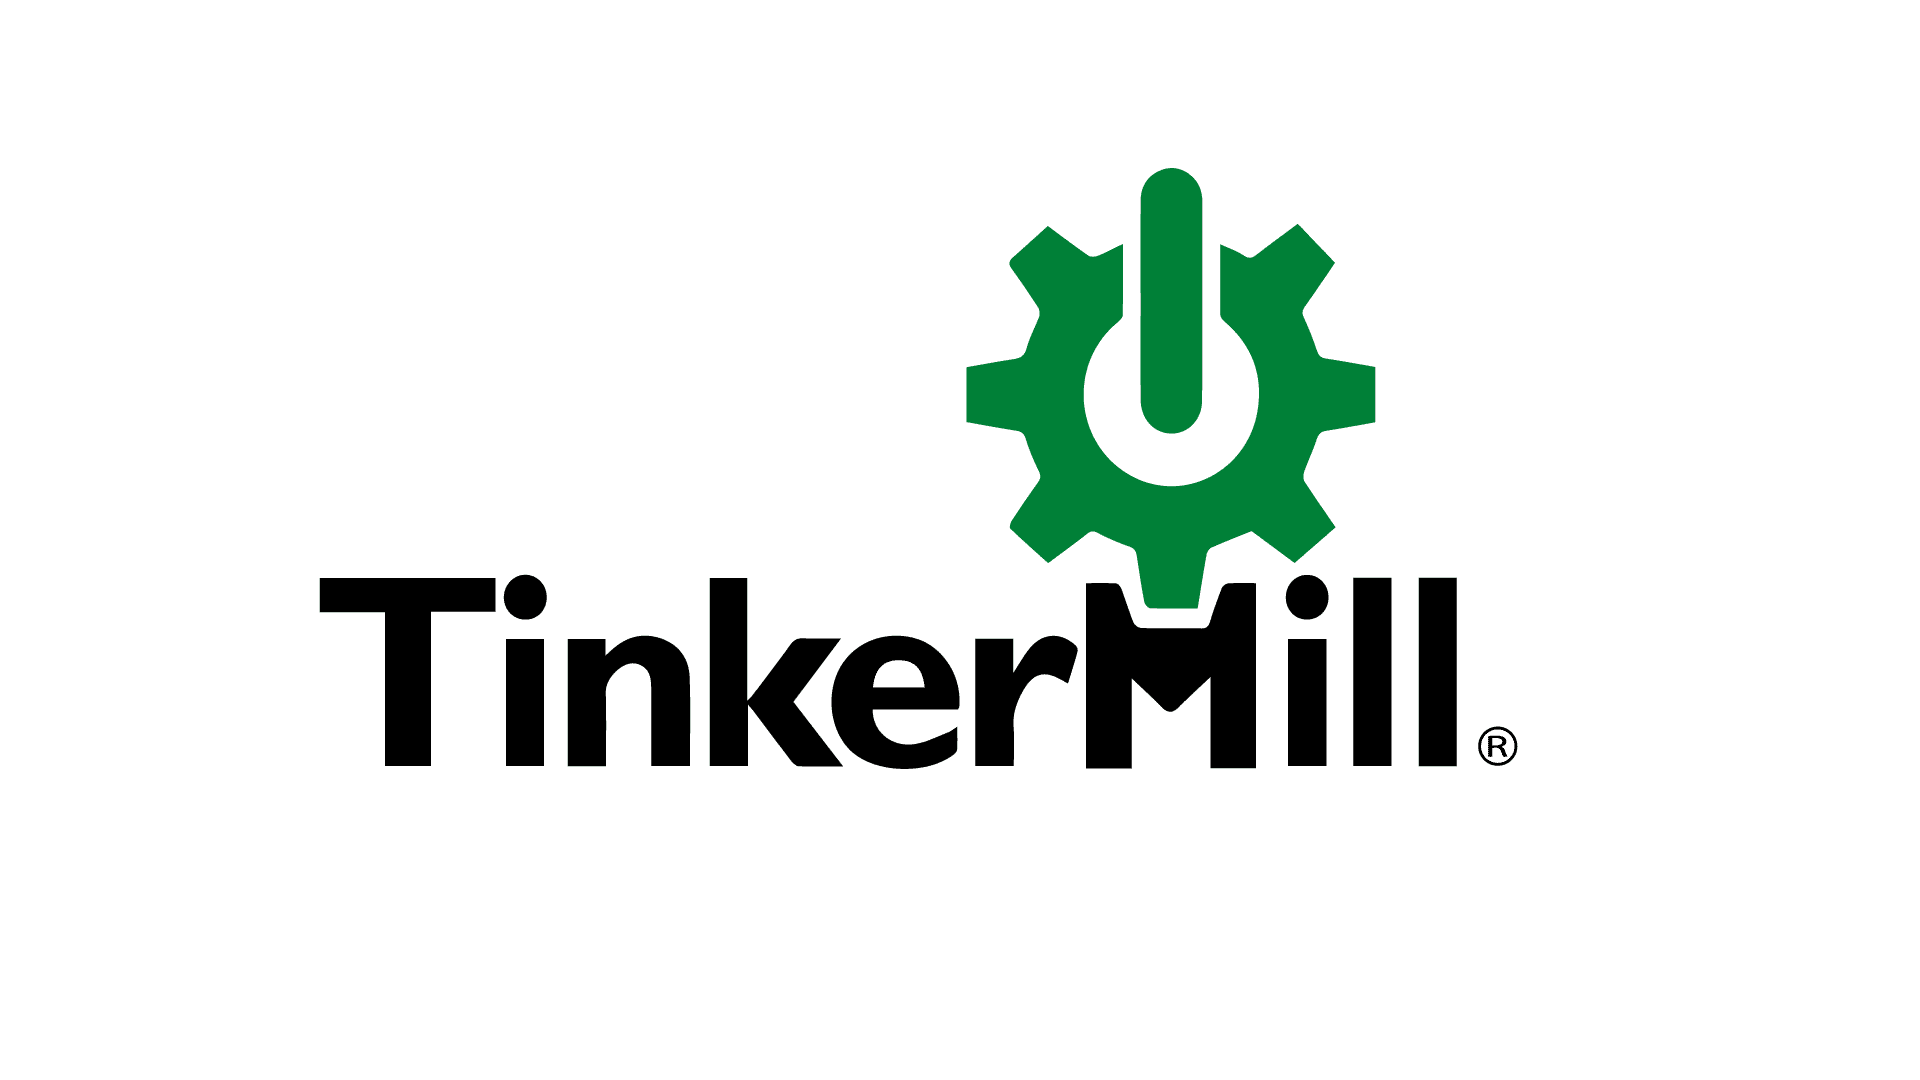 TinkerMill